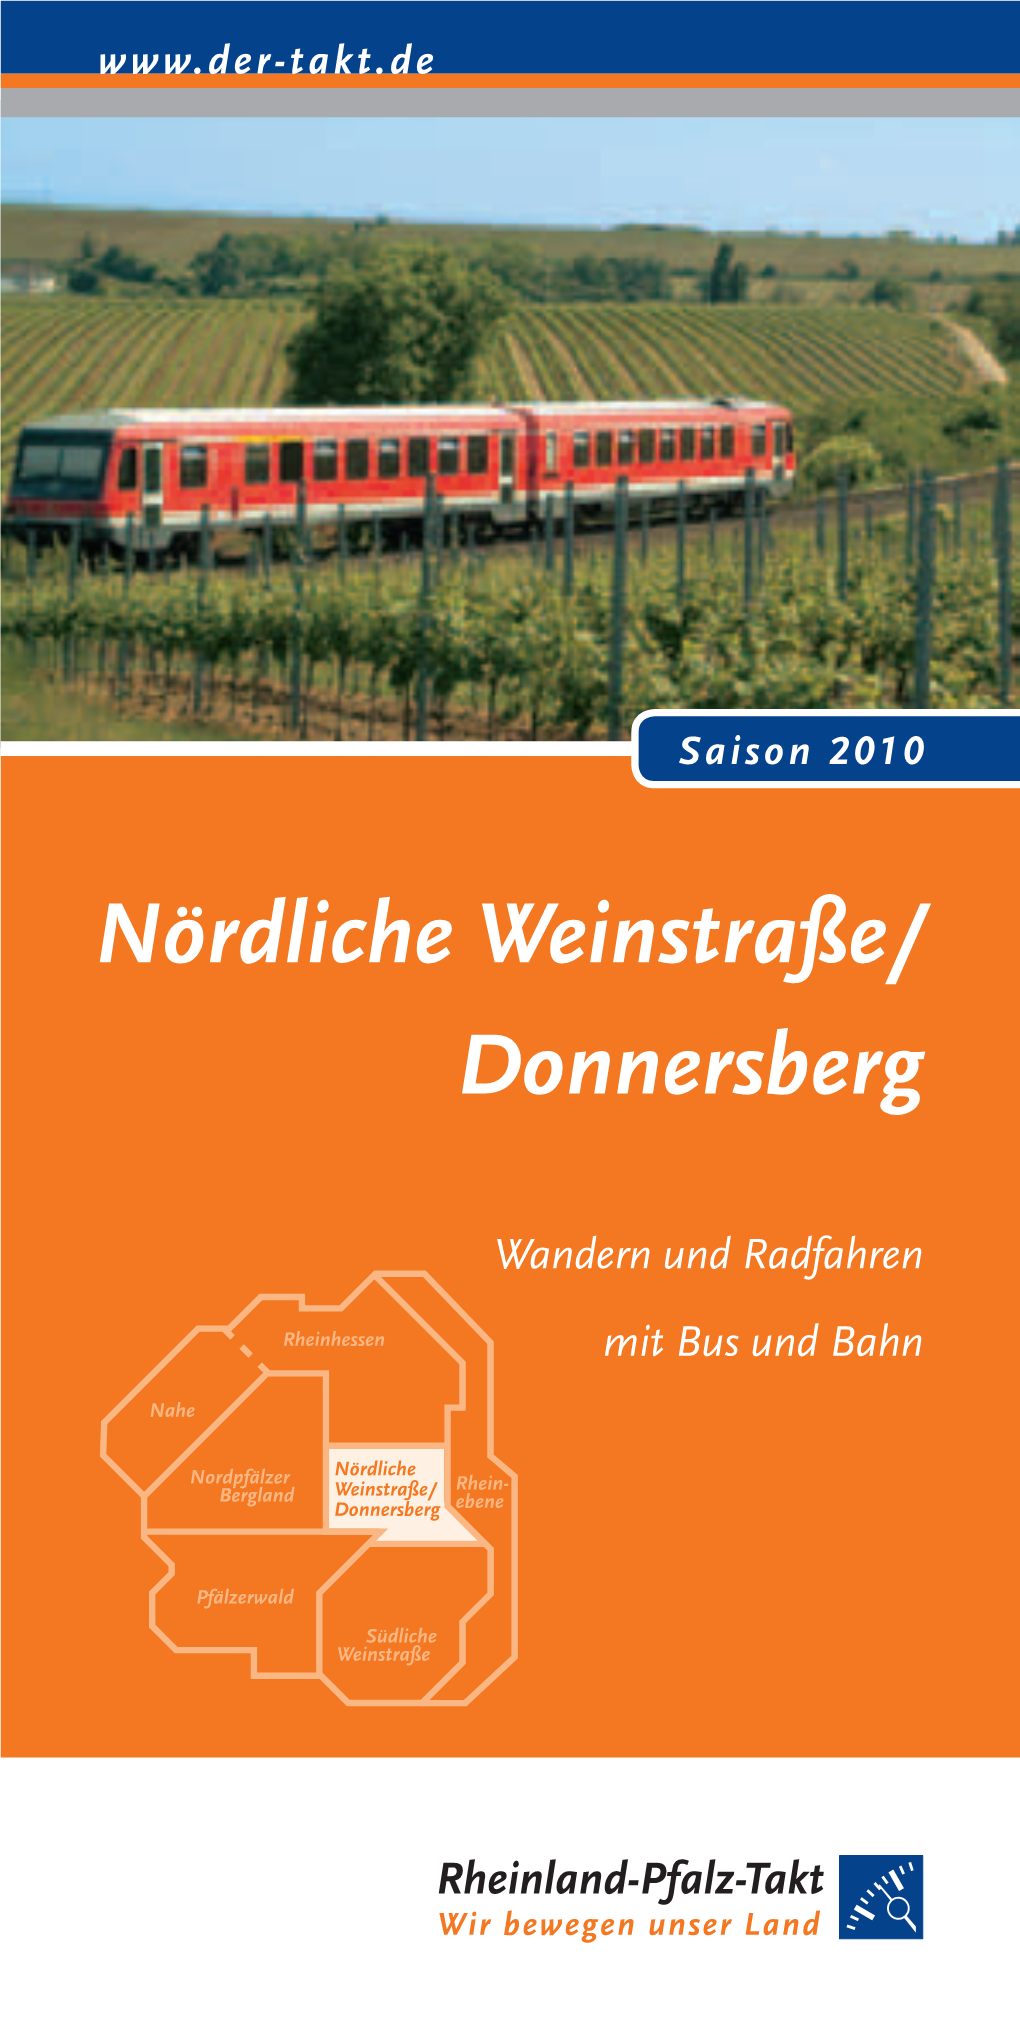 Nördliche Weinstraße/ Donnersberg